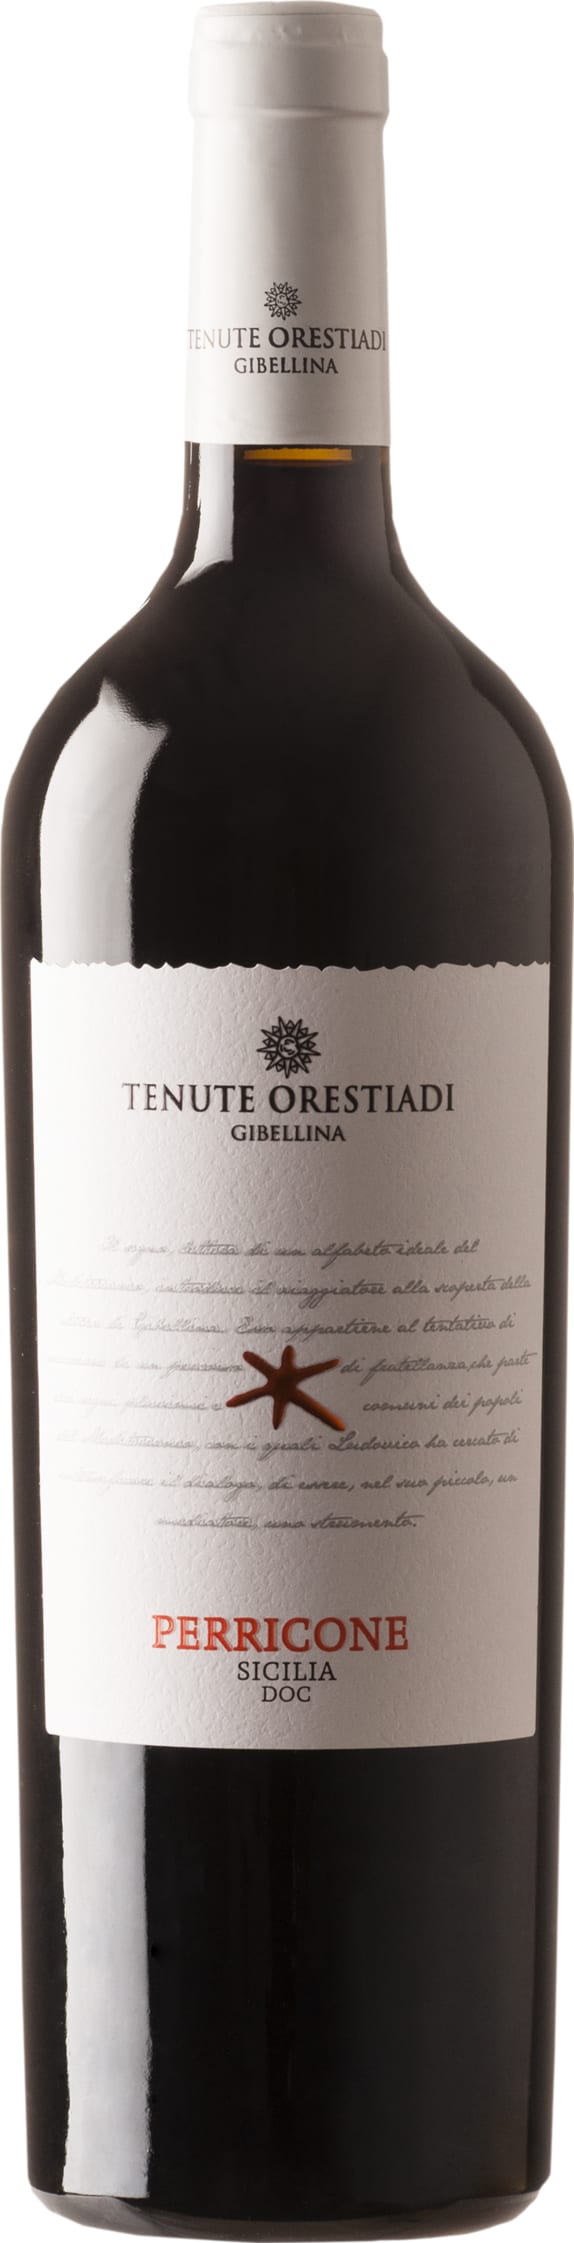 Tenute Orestiadi - Tenute Orestiadi Perricone 2021 75cl - Buy Tenute Orestiadi - Tenute Orestiadi Wines from GREAT WINES DIRECT wine shop